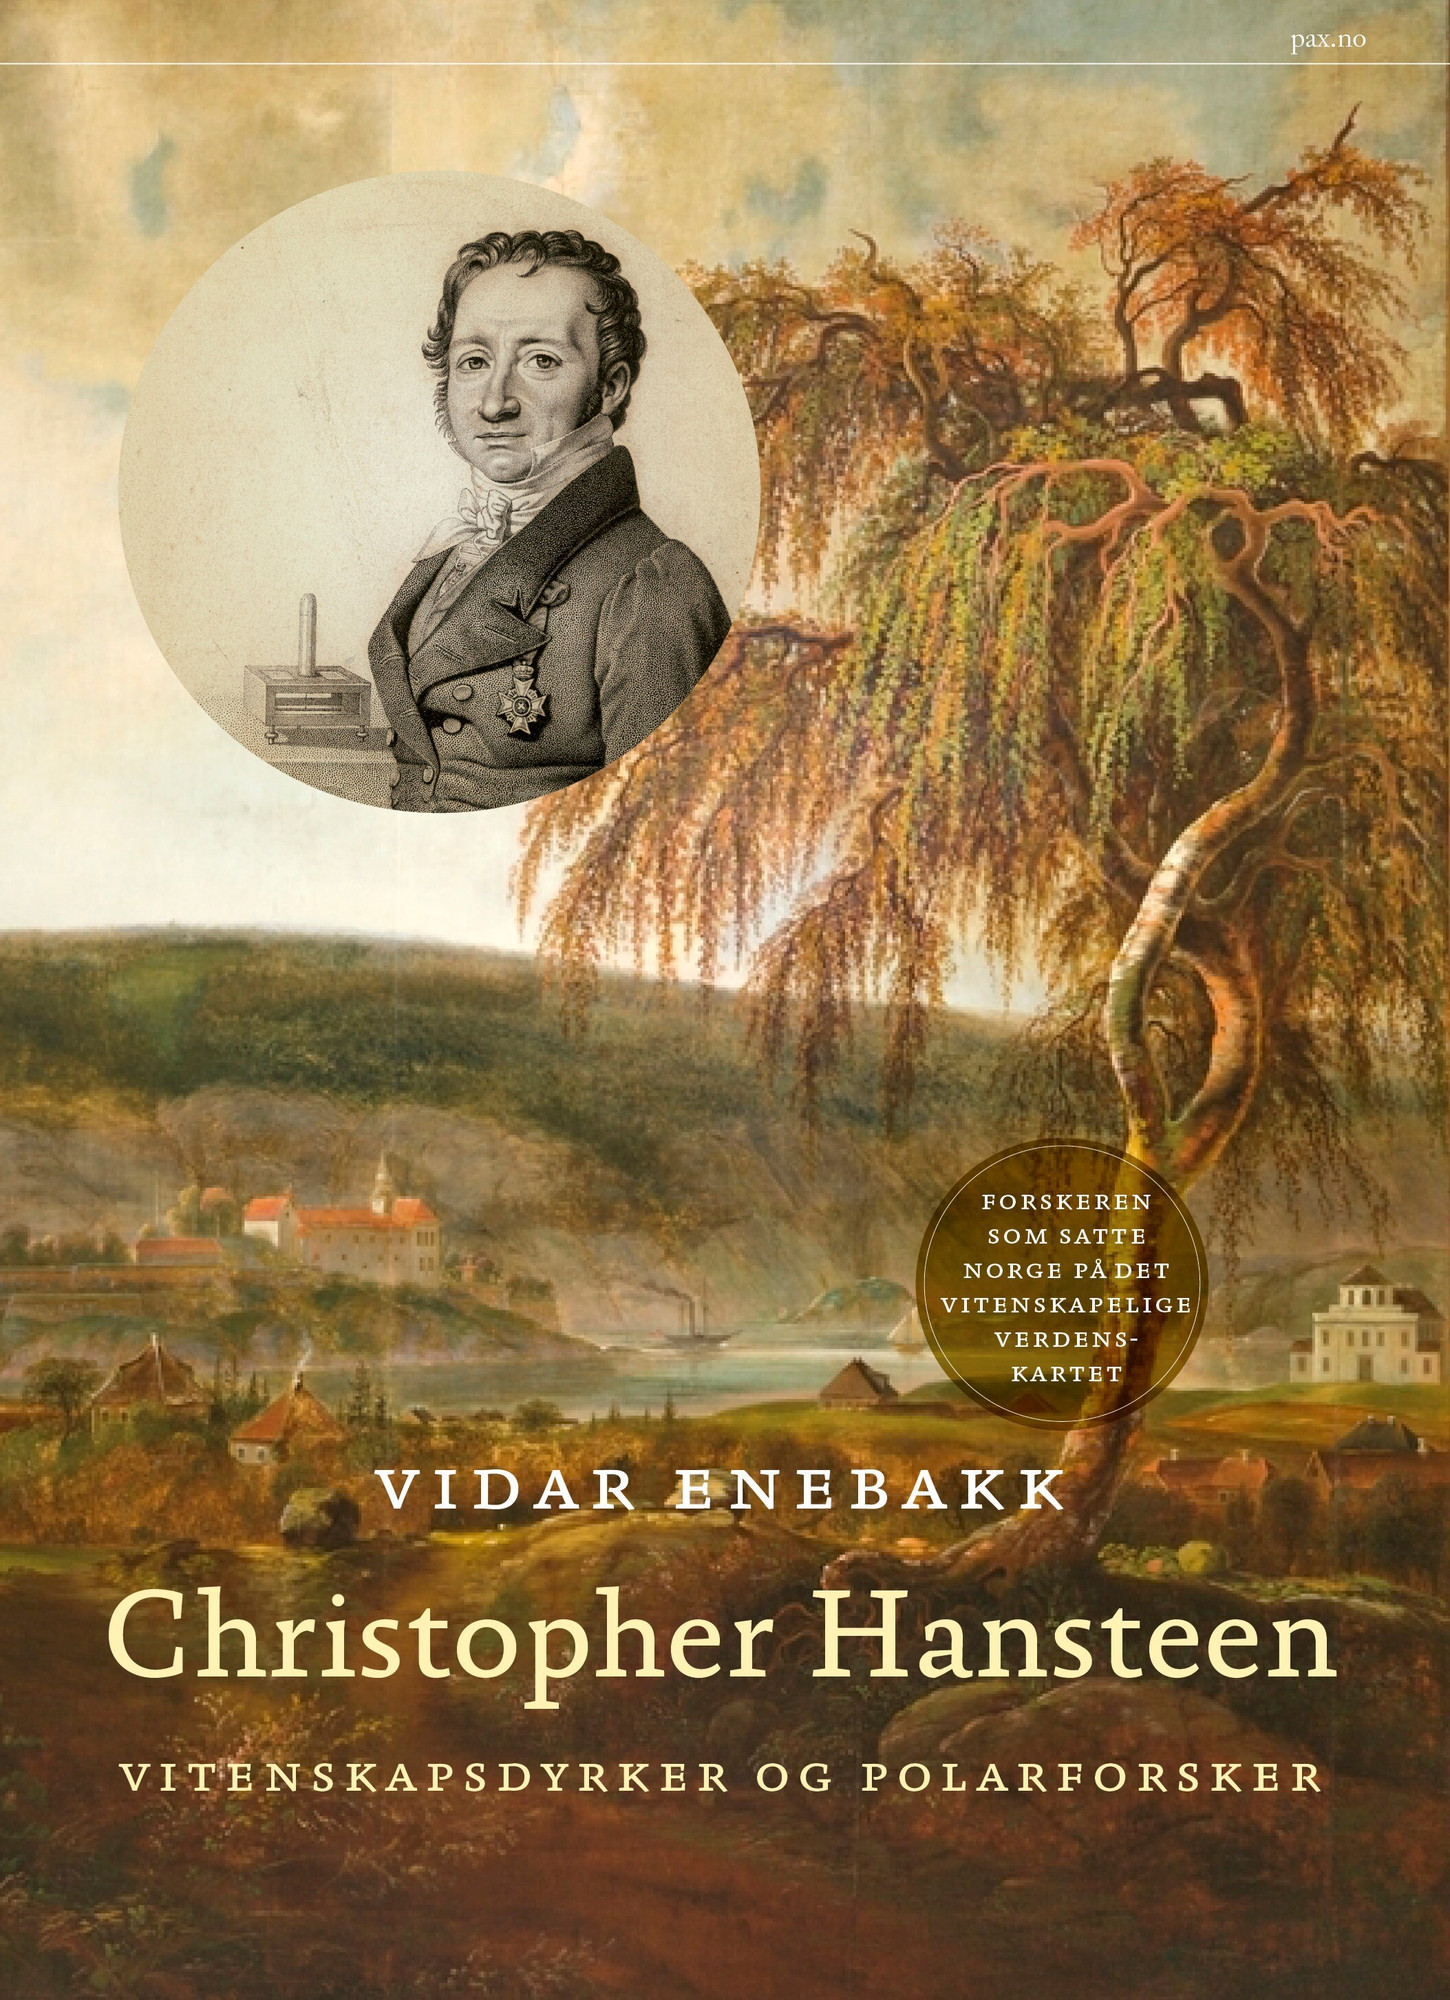 Omslag til boka Christopher Hansteen: Vitenskapsdyrker og polarforsker av Vidar Enebakk.